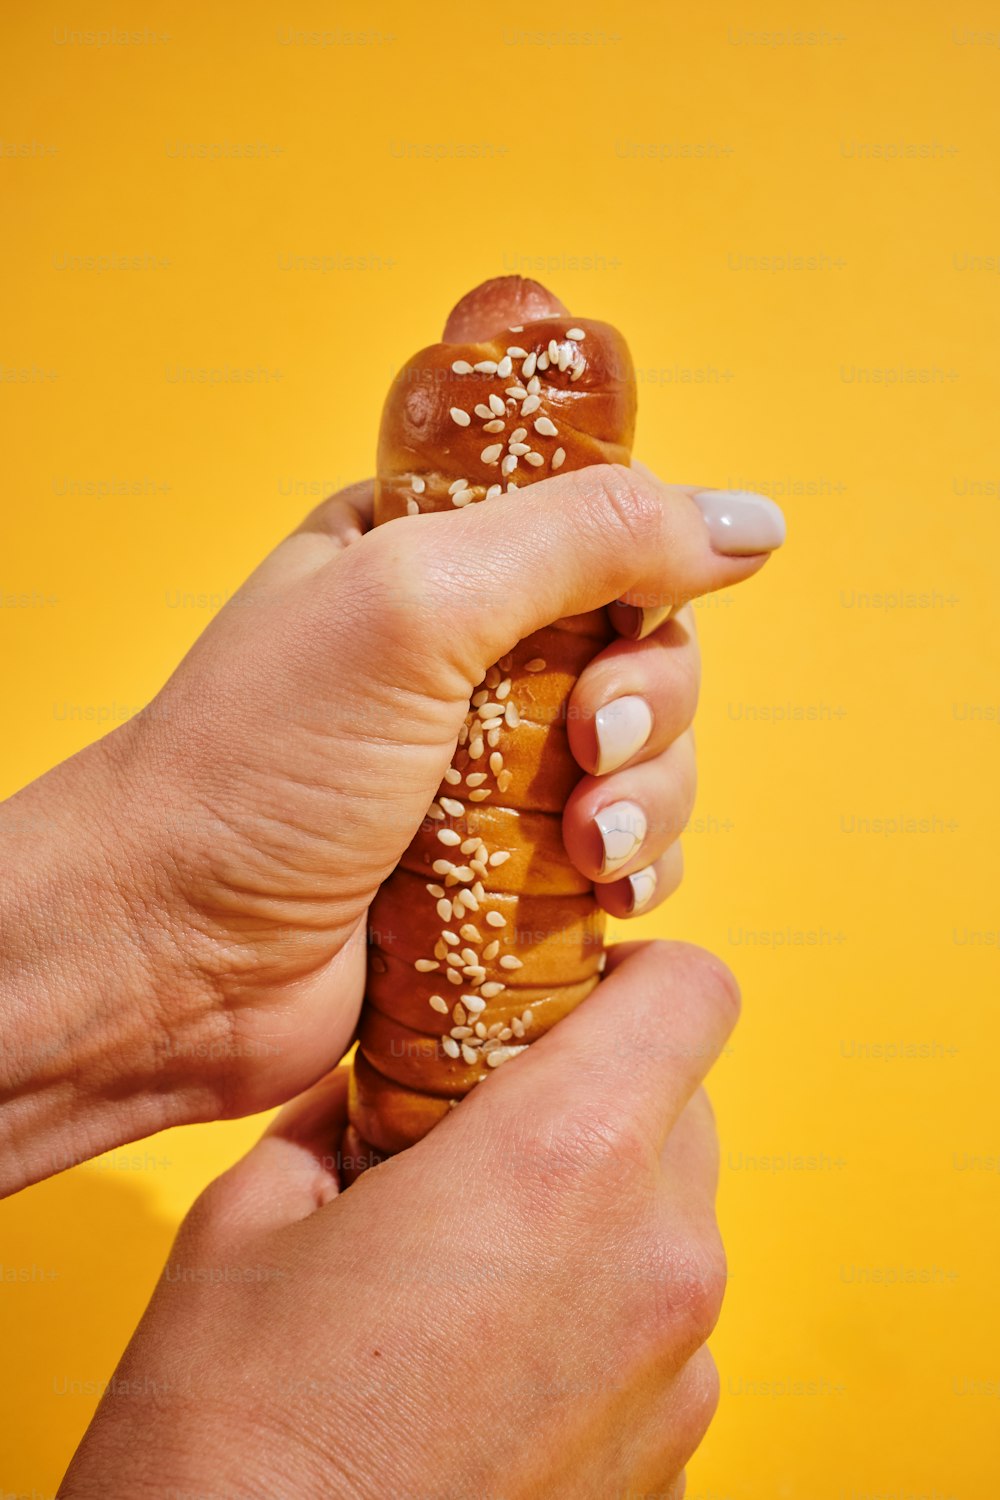 uma pessoa segurando um pretzel na mão